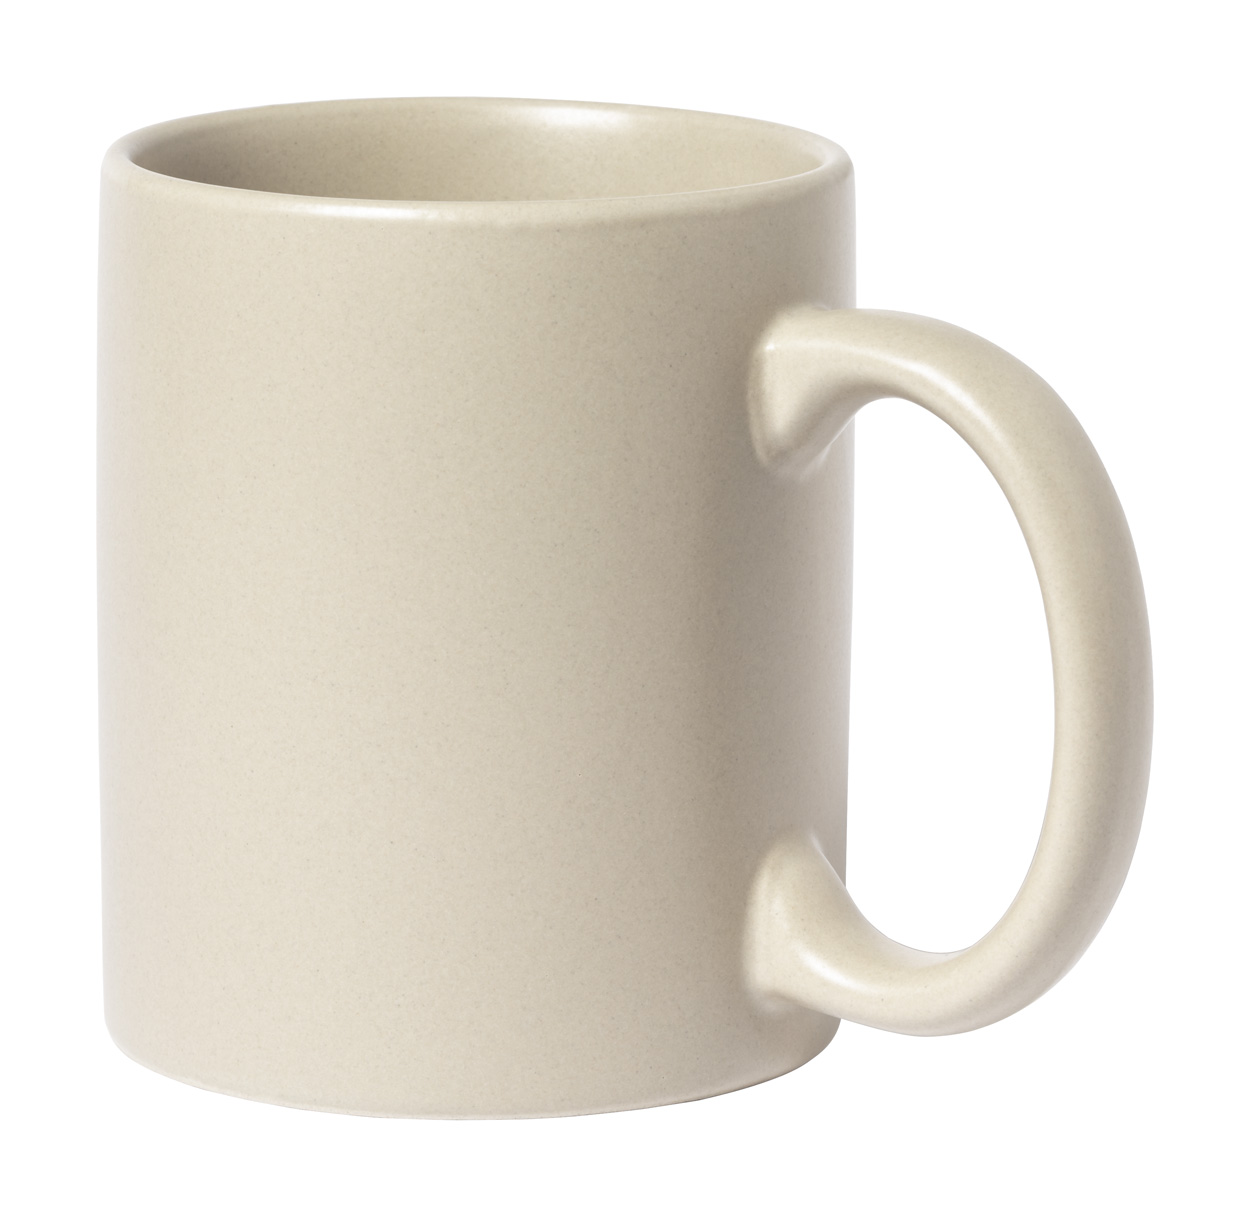 Malik mug